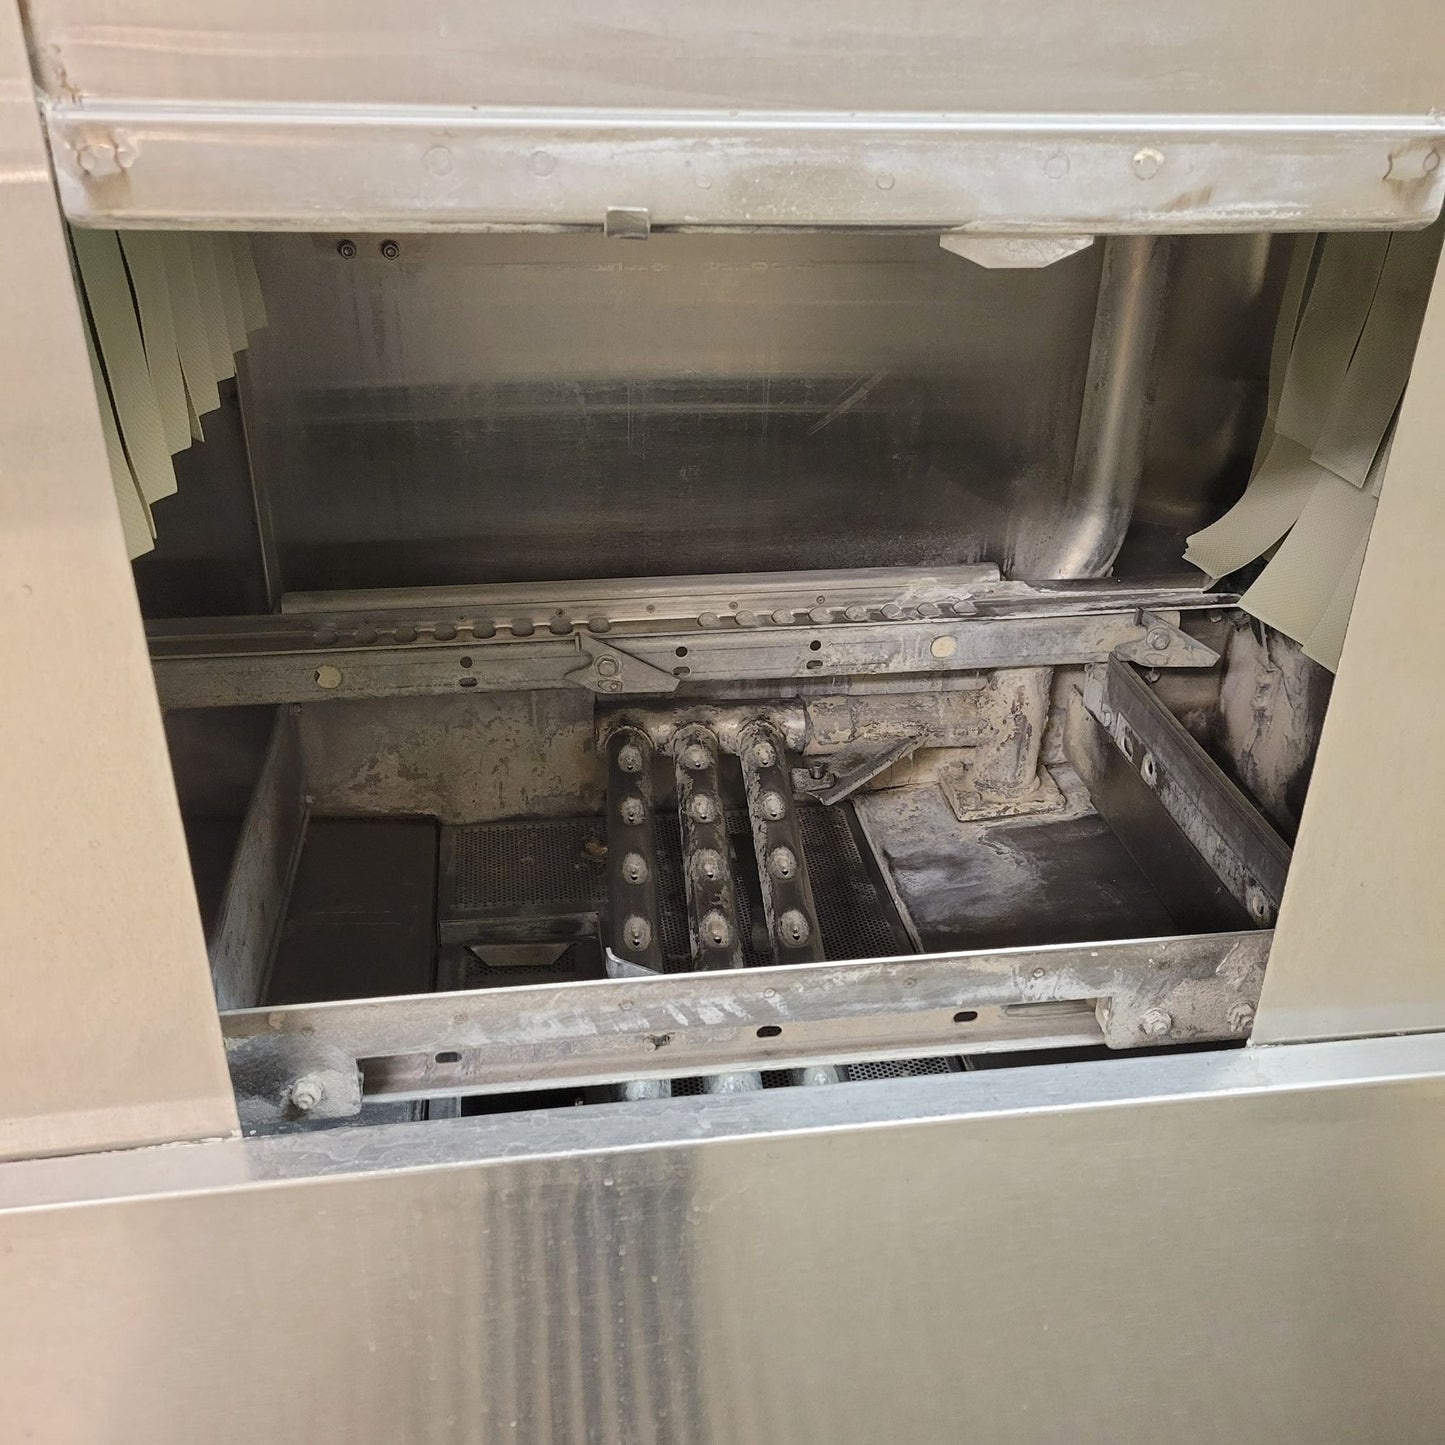 Hobart C44AW Self Feed Rack Dishwasher w/Water Heater